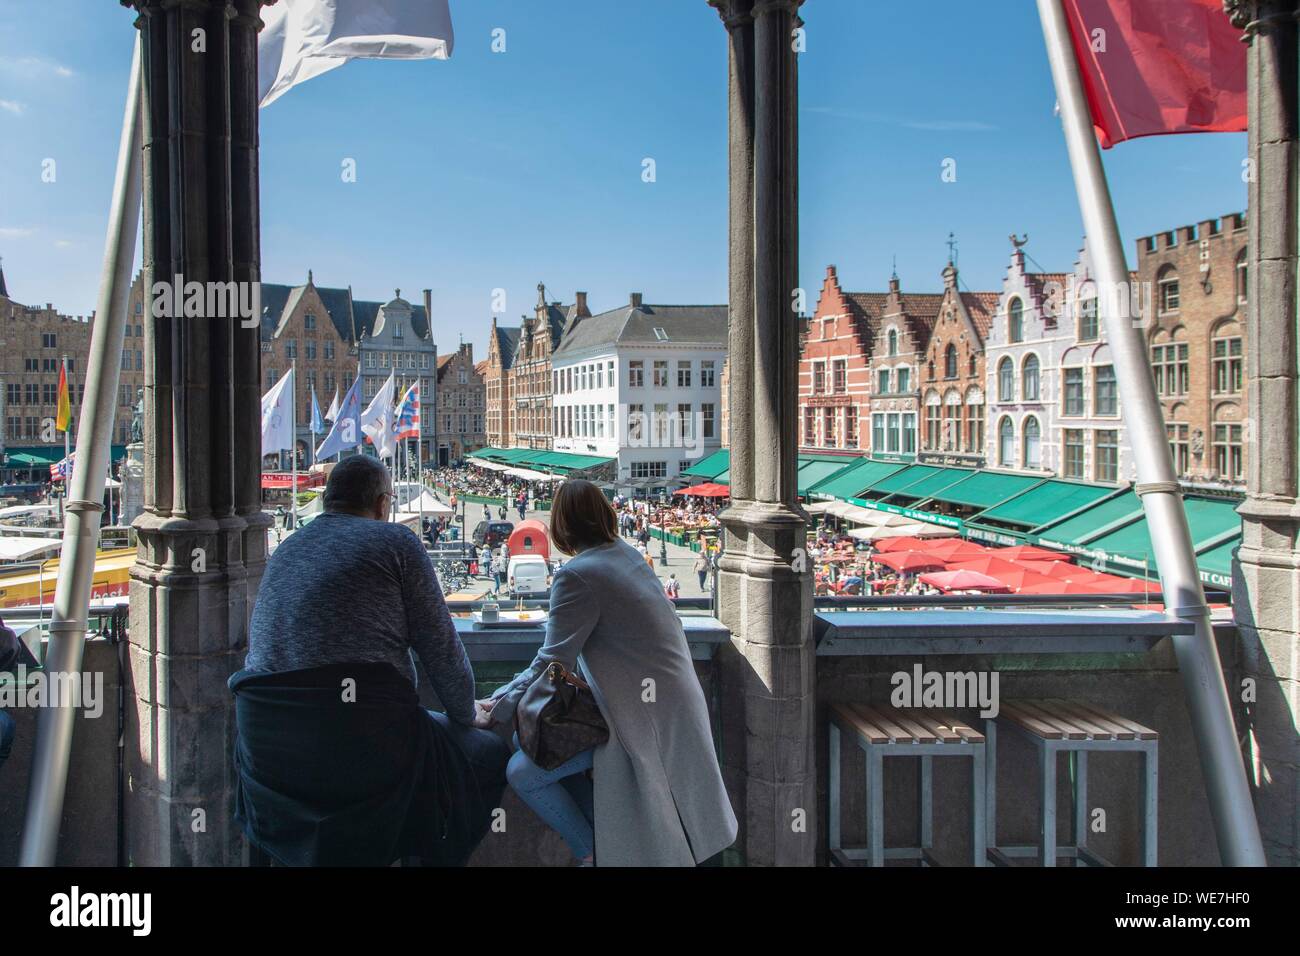 Belgio Fiandre Occidentali, Bruges, centro storico sono classificati come patrimonio mondiale dall' UNESCO, il Grand Place, il ristorante Le Terrazze e casa a capanna Foto Stock